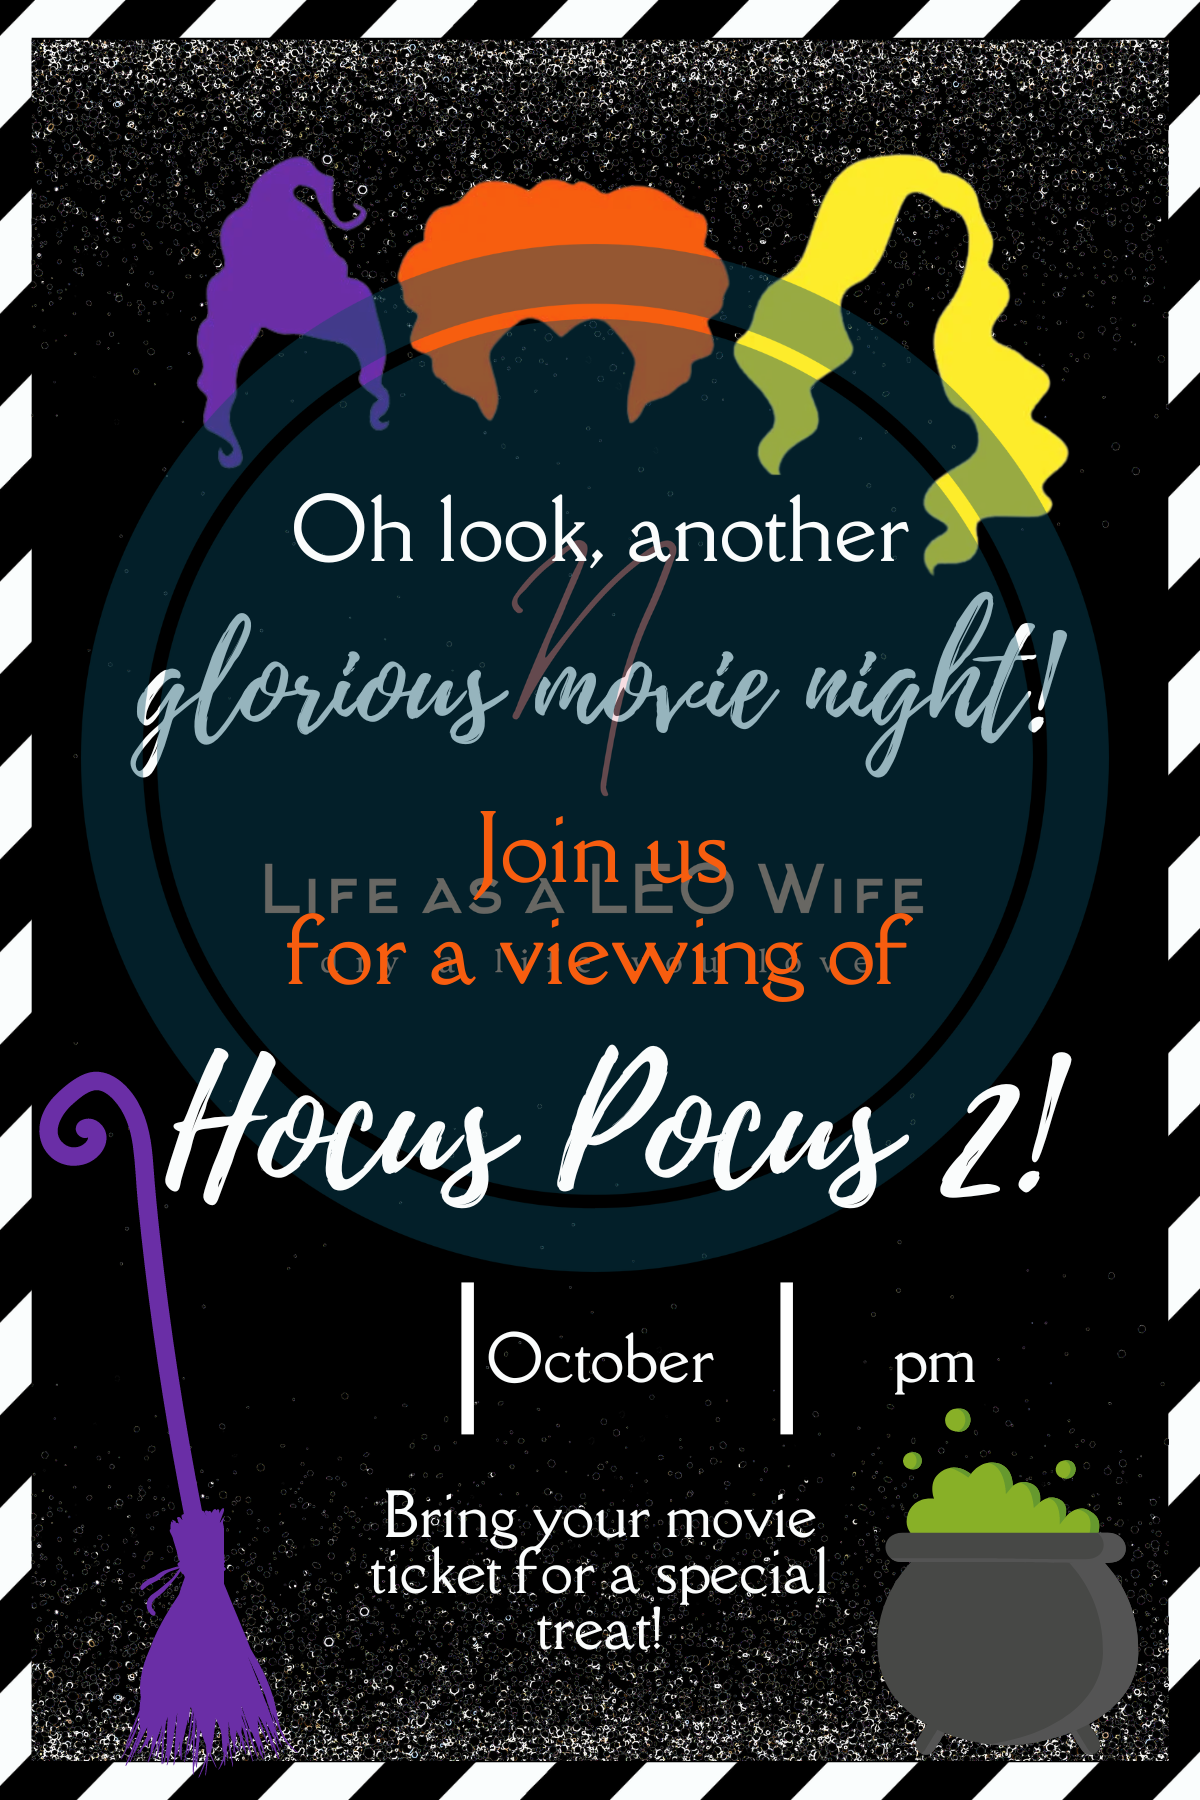 Hocus Pocus movie night invitation preview.